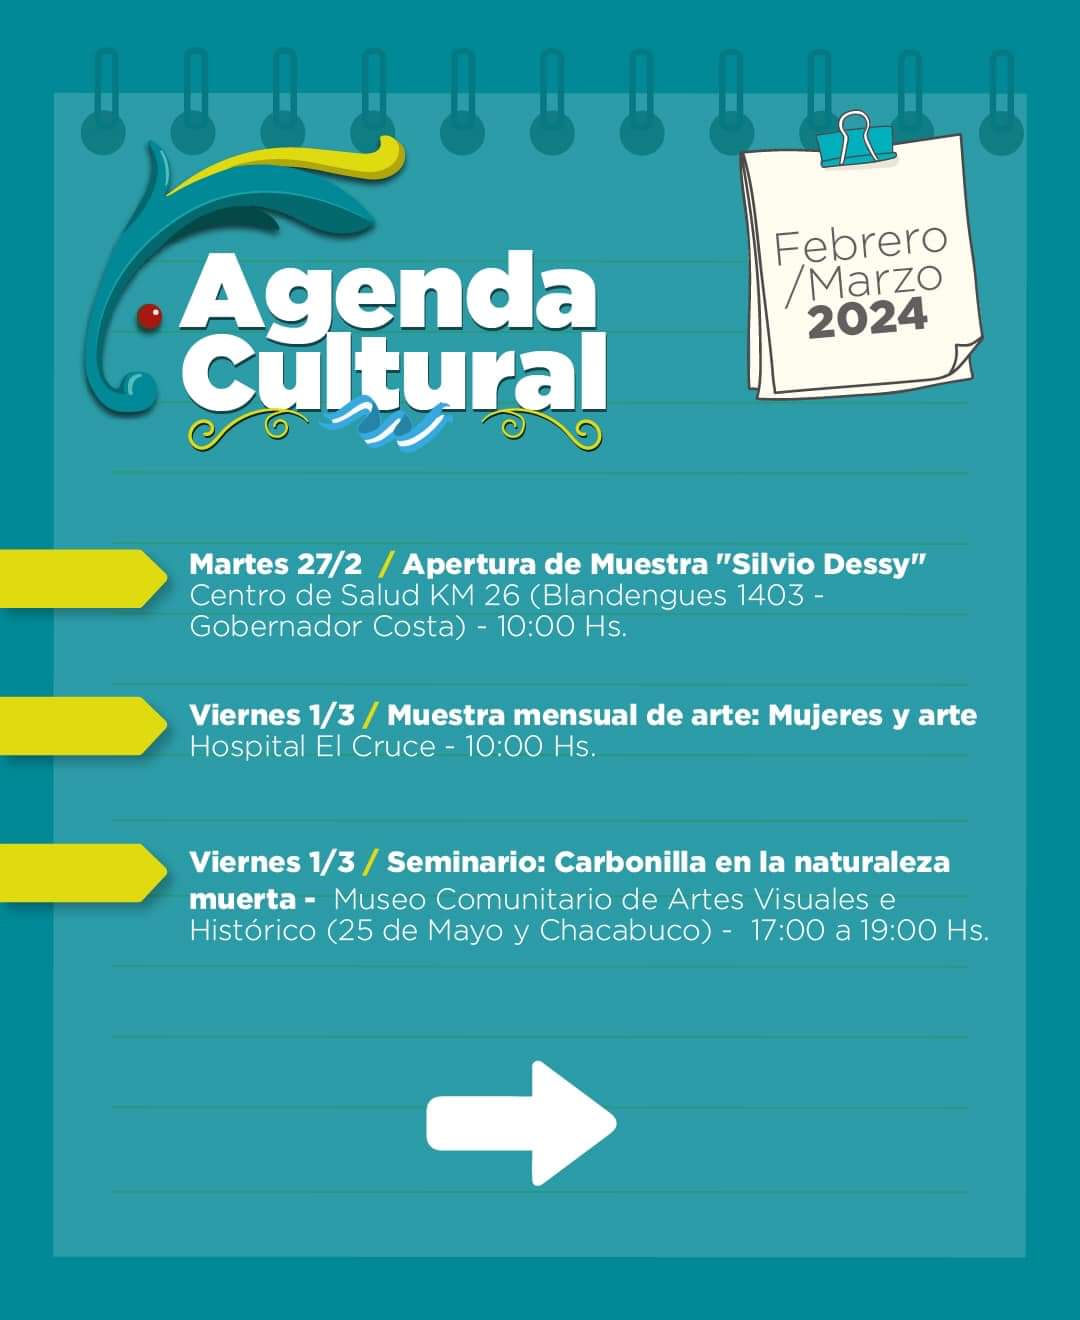 Segmento: “¿Qué hacer en Florencio Varela?: Agenda Cultural”. 